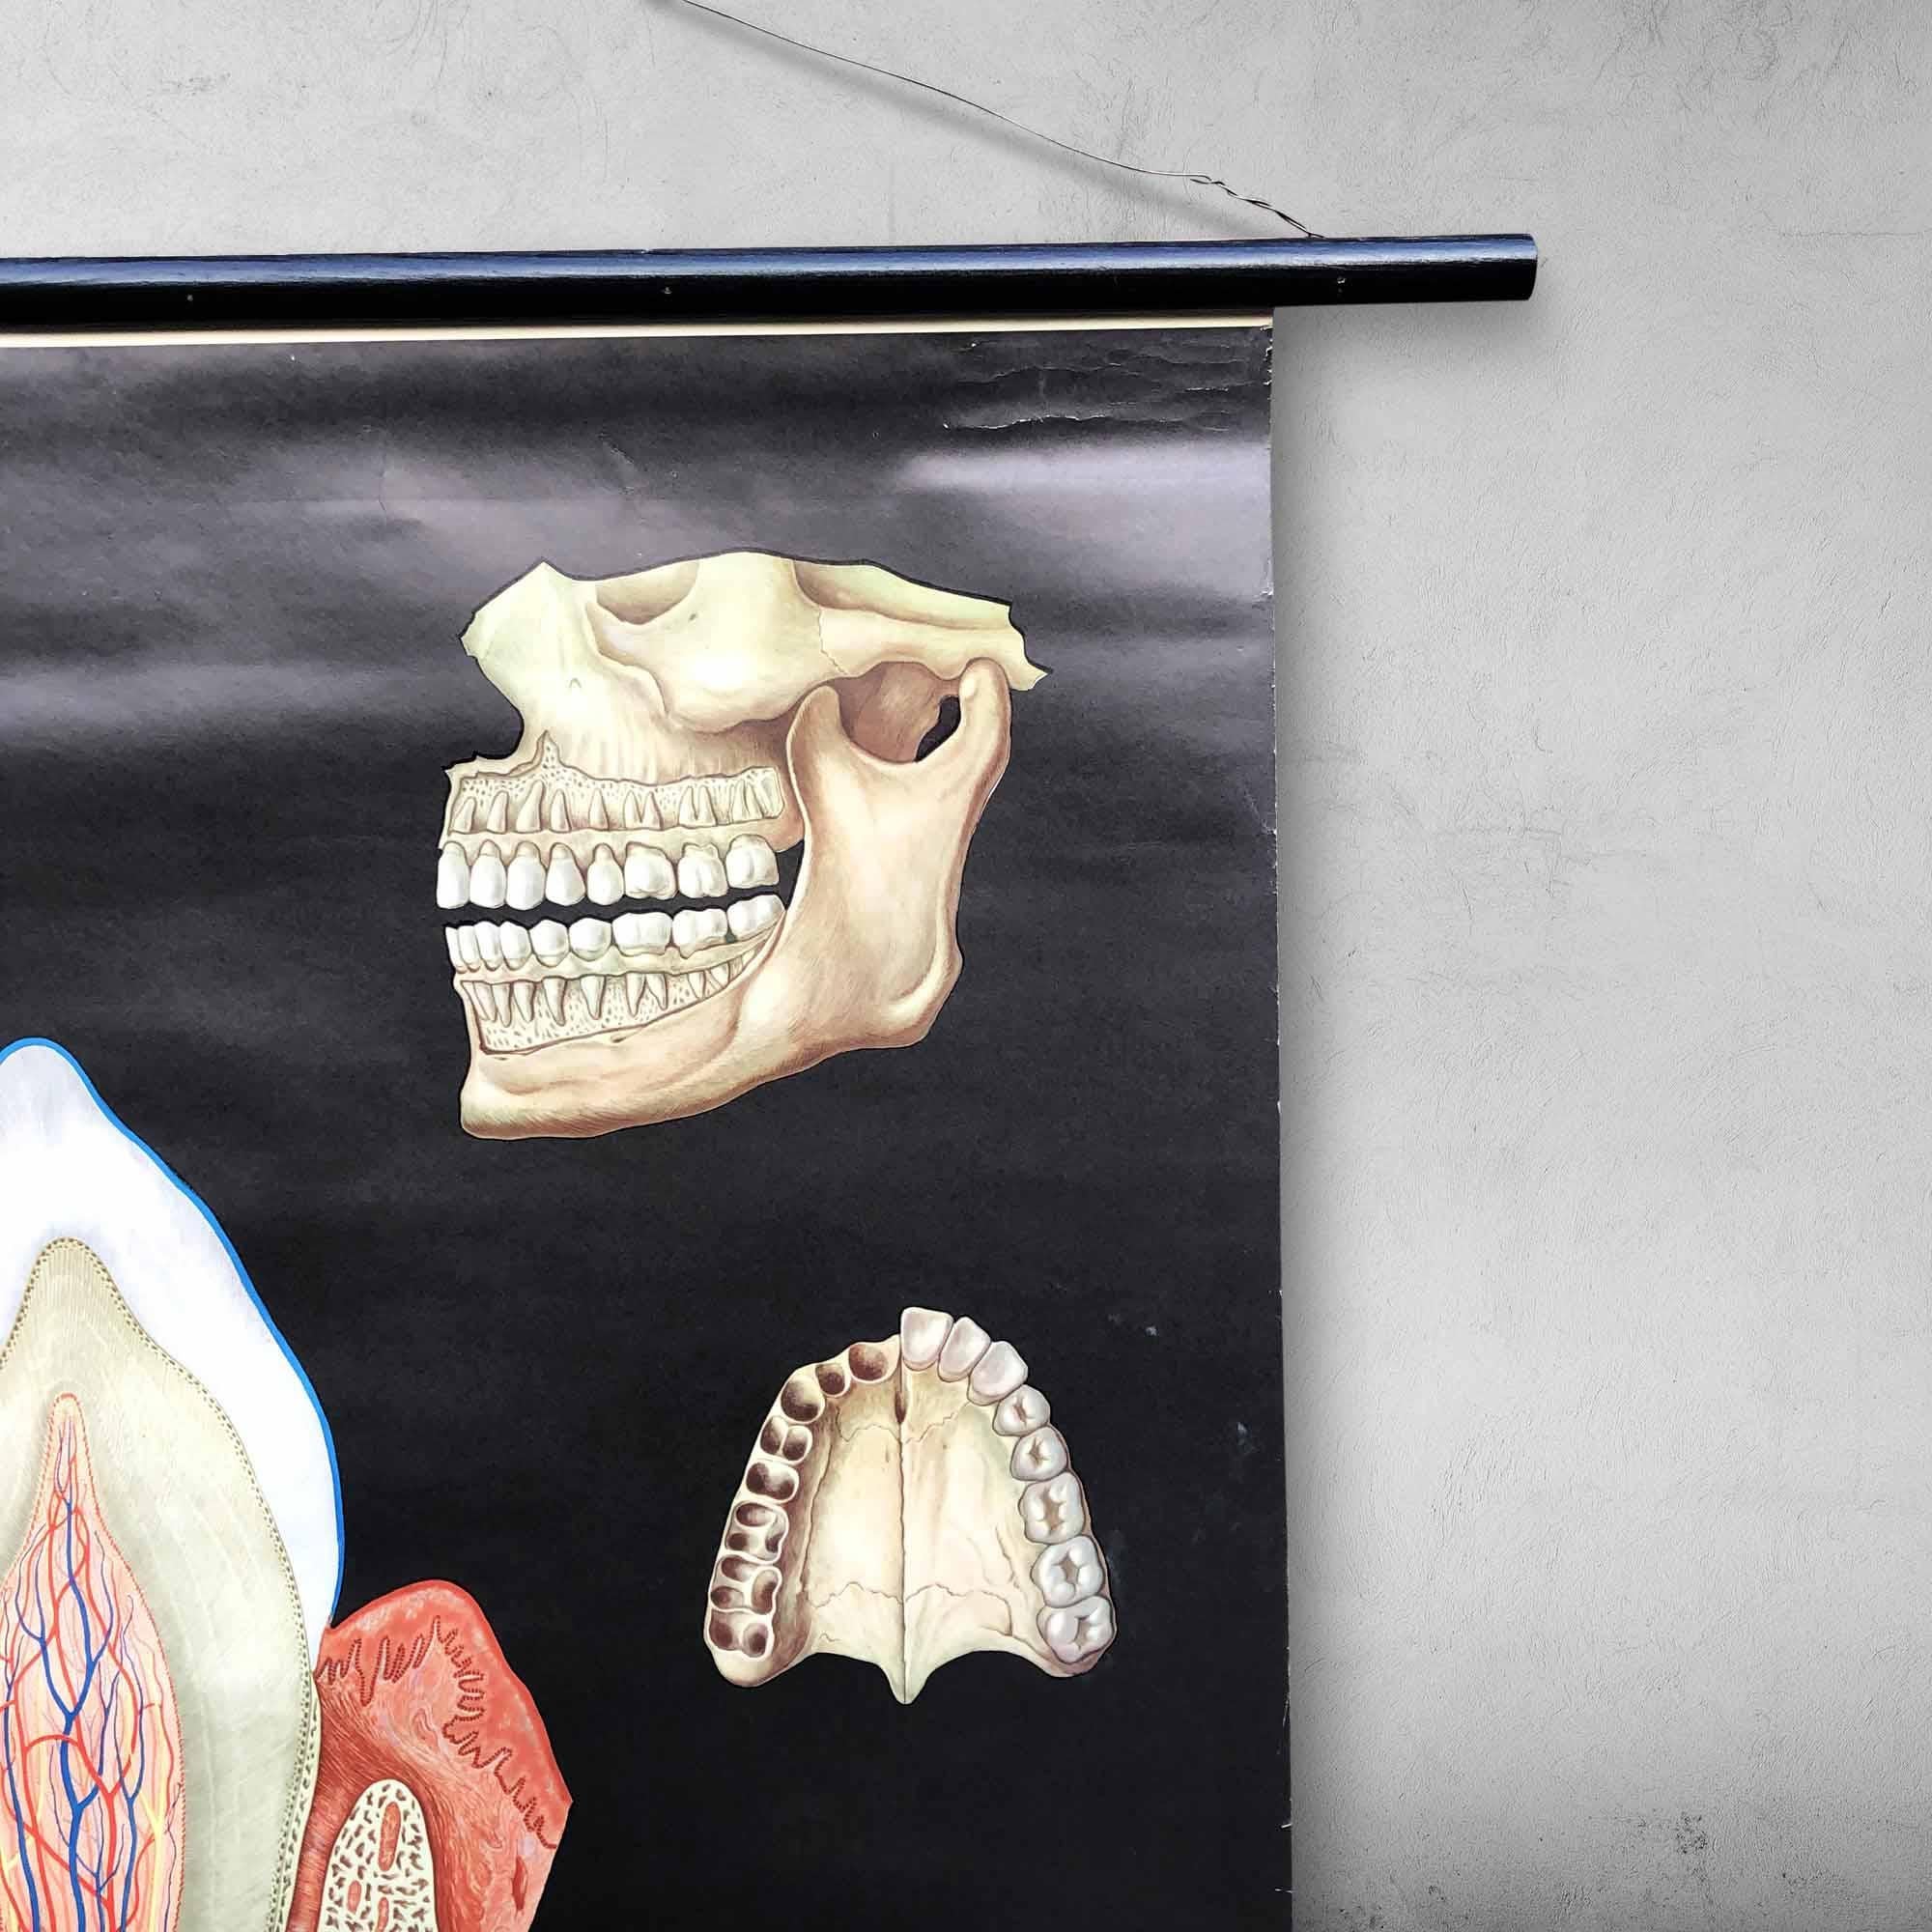 Eine original deutsche Wandtafel über menschliche Zähne.
Der Text auf der Karte ist in deutscher Sprache und wurde für Unterrichtszwecke verwendet. Es hat ein prächtiges Design, detaillierte Zeichnungen und schöne tiefe Farben.

Ideal für